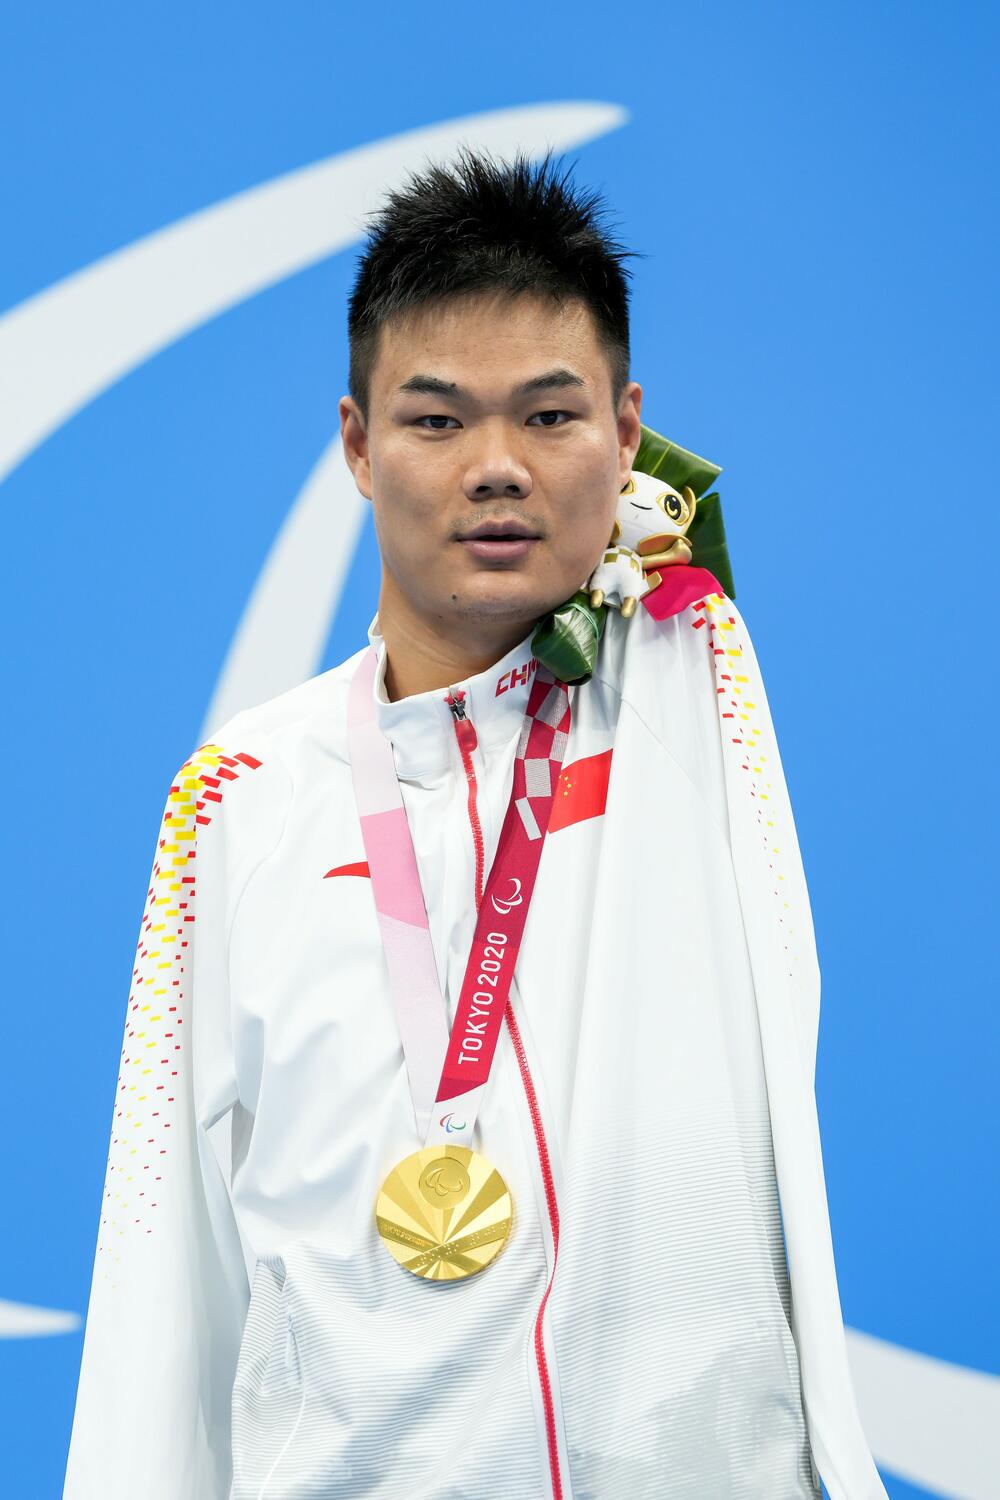 Zheng Tao